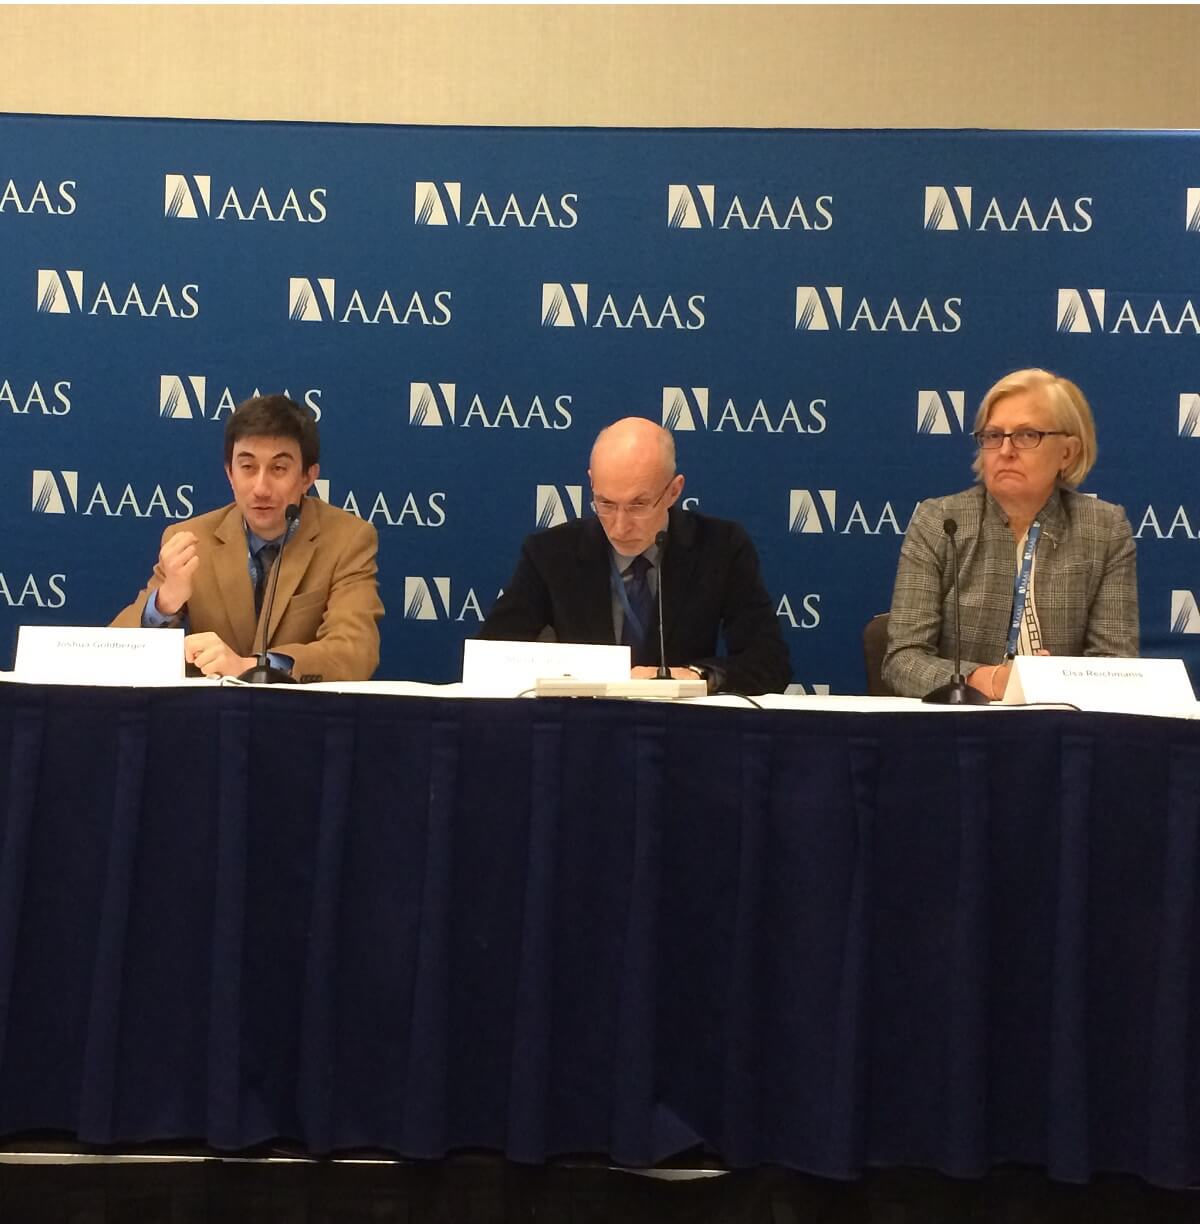 משמאל לימין: ג'ושוע גולדברג, טטיוארט פרקינס, אלזה רייכמאניס במסיבת העיתונאים שעסקה בעתיד האלקטרוניקה בכנס ה-AAAS בסן חוזה, פברואר 2015.. צילום: אבי בליזובסקי